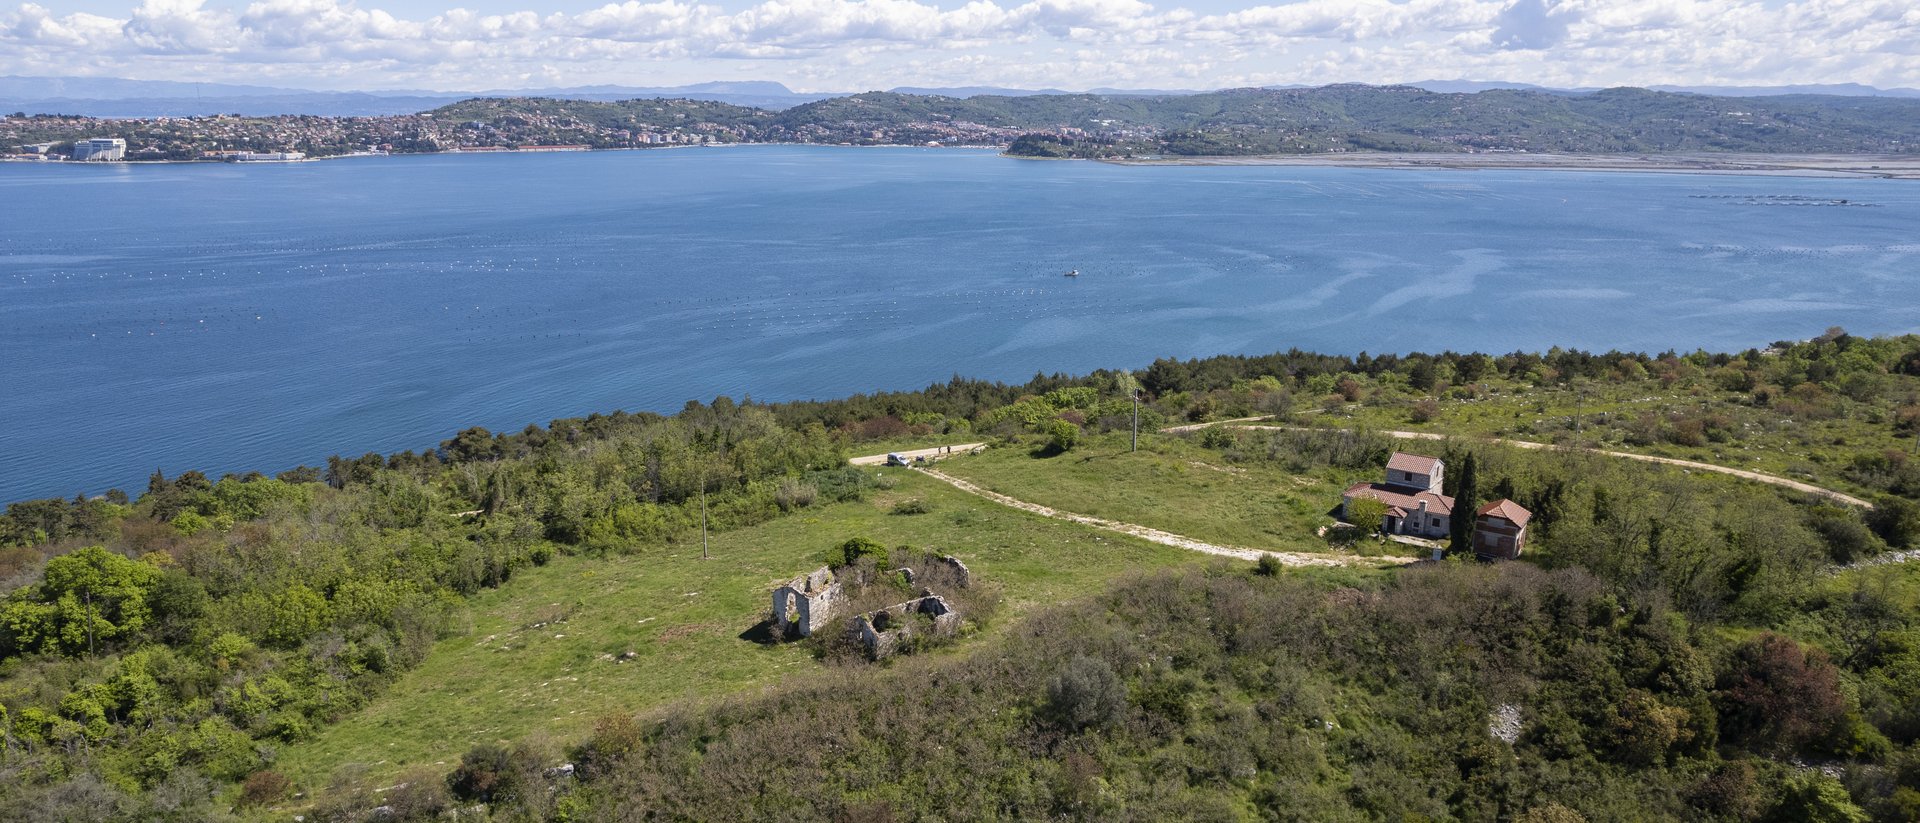 Ekskluzivna prodaja!!! Jedinstvena nekretnina na brdu Sv.Petar, sa pogledoma od 360 stupnjeva prema moru, Sloveniji, Alpama, jugu....